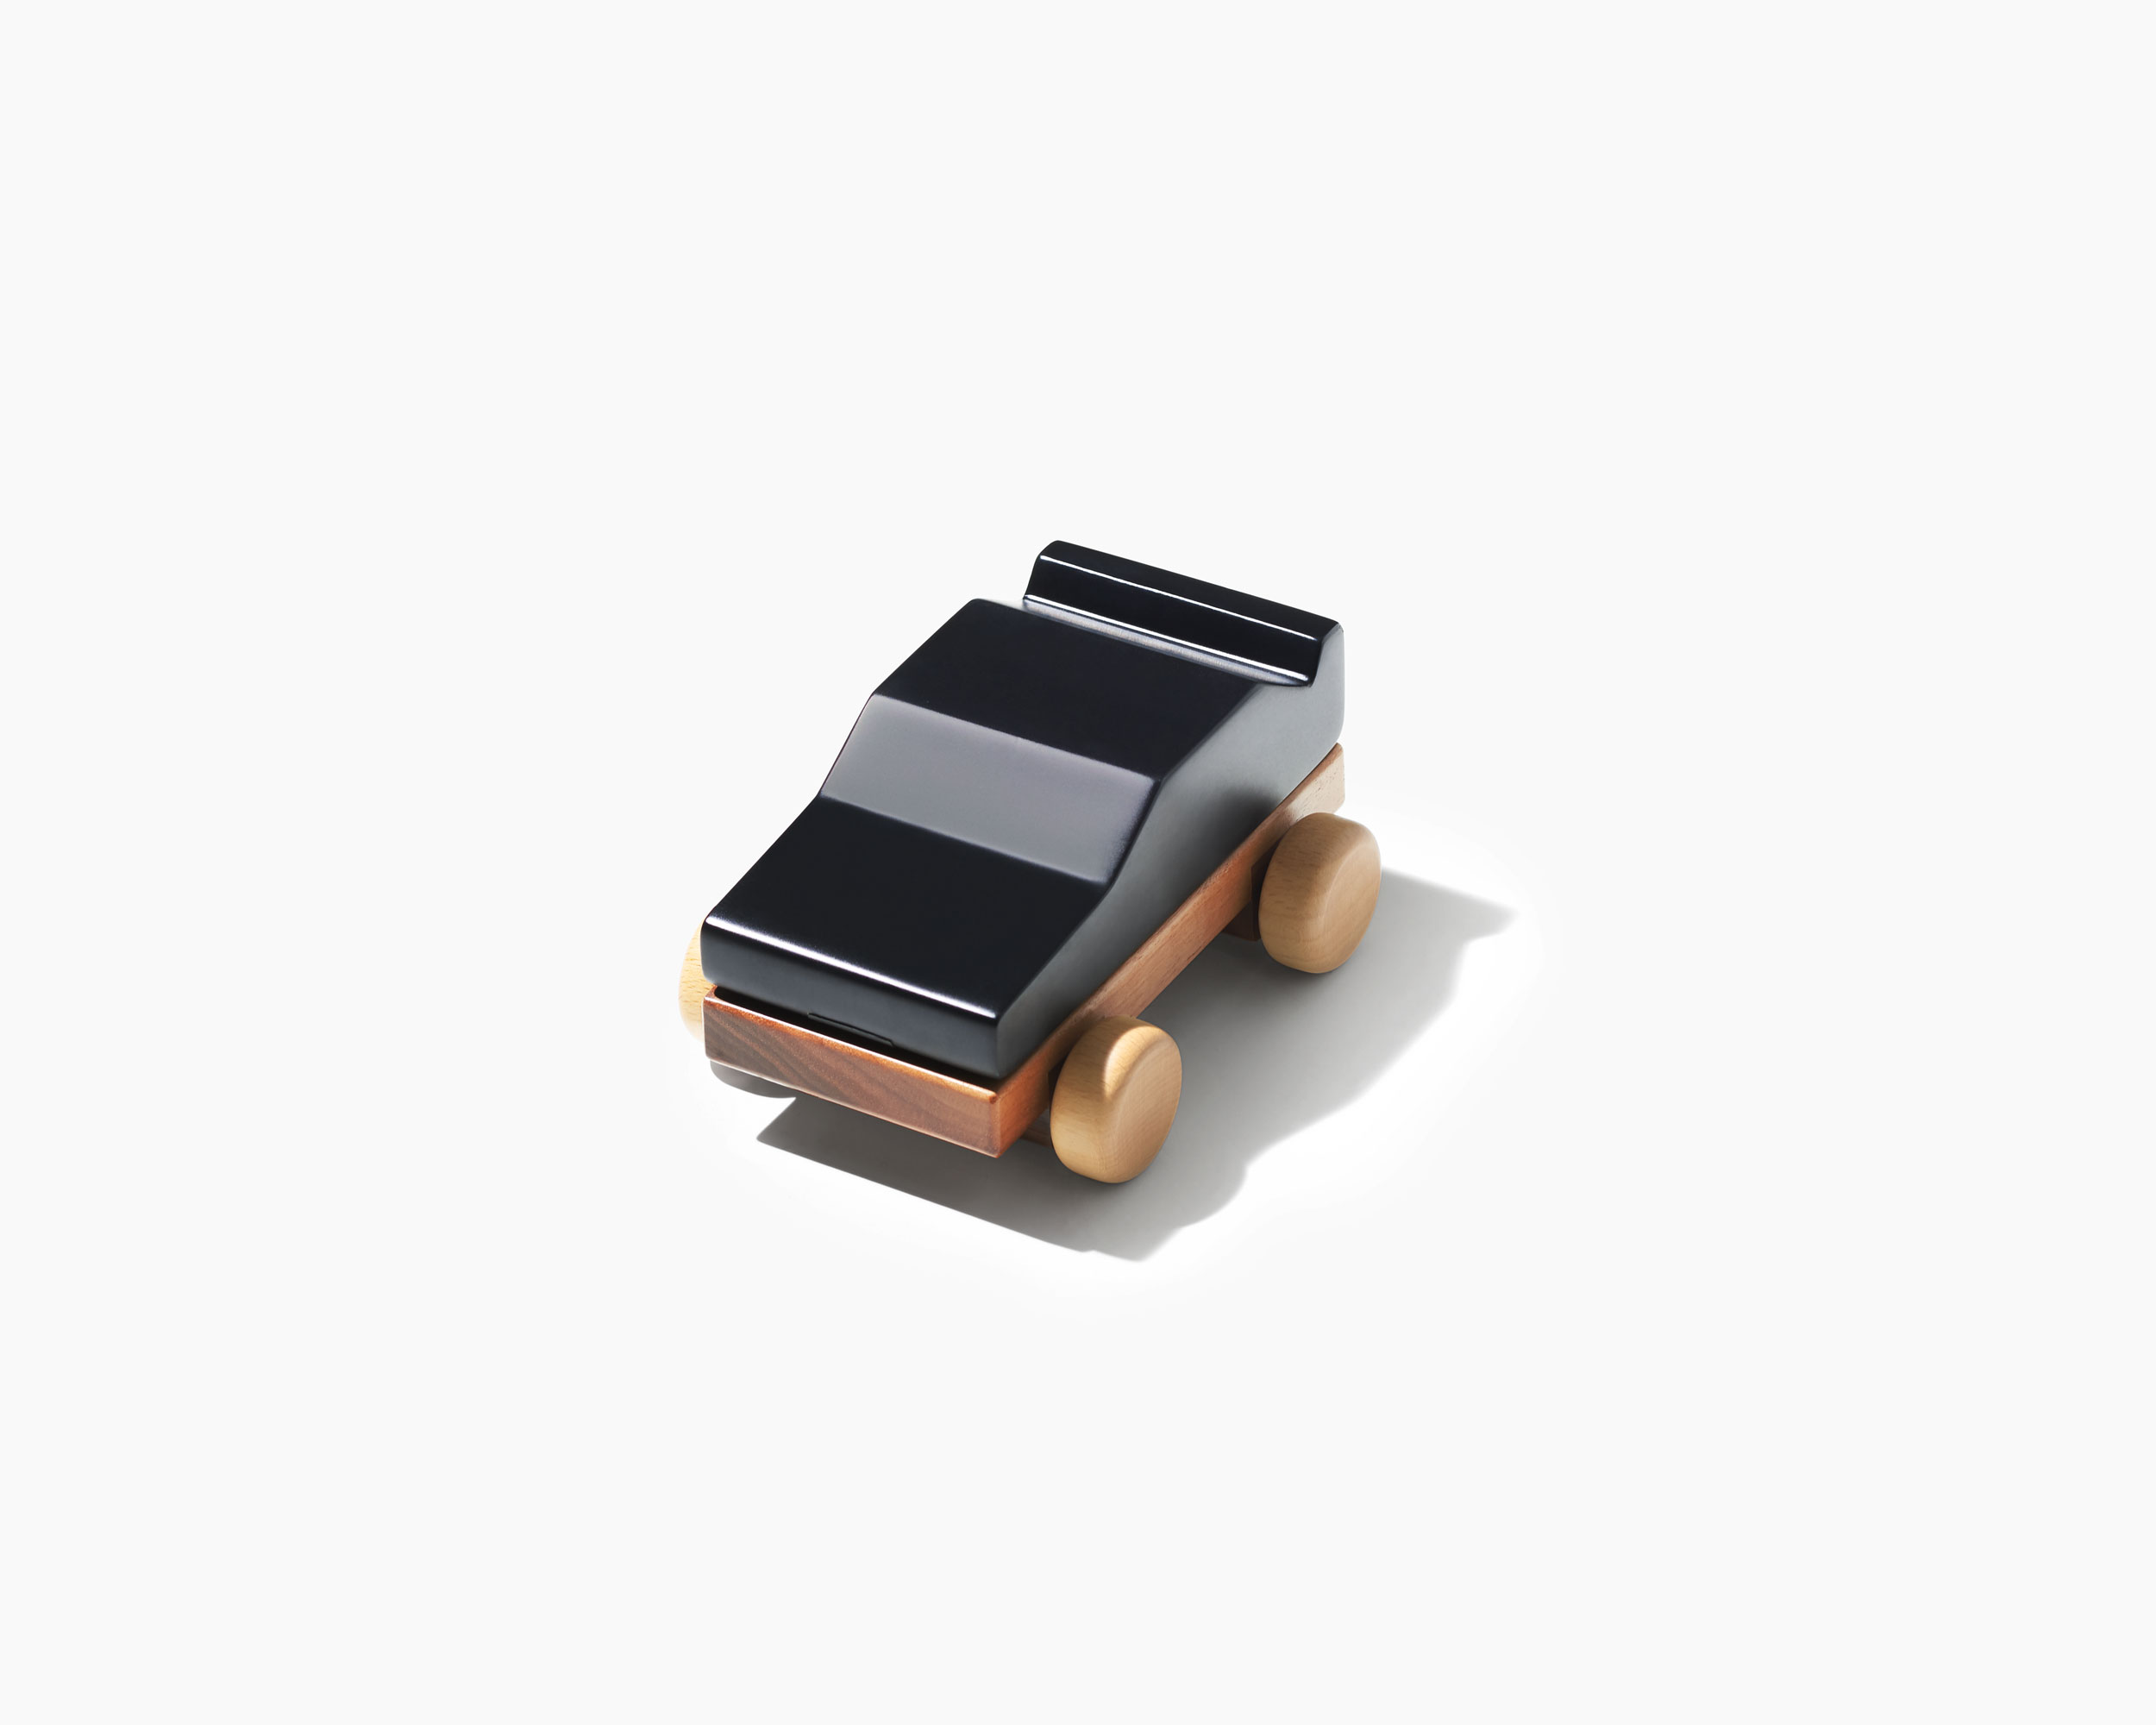 Dream Car Adventurous - Magnetic, chalkboard, wooden car